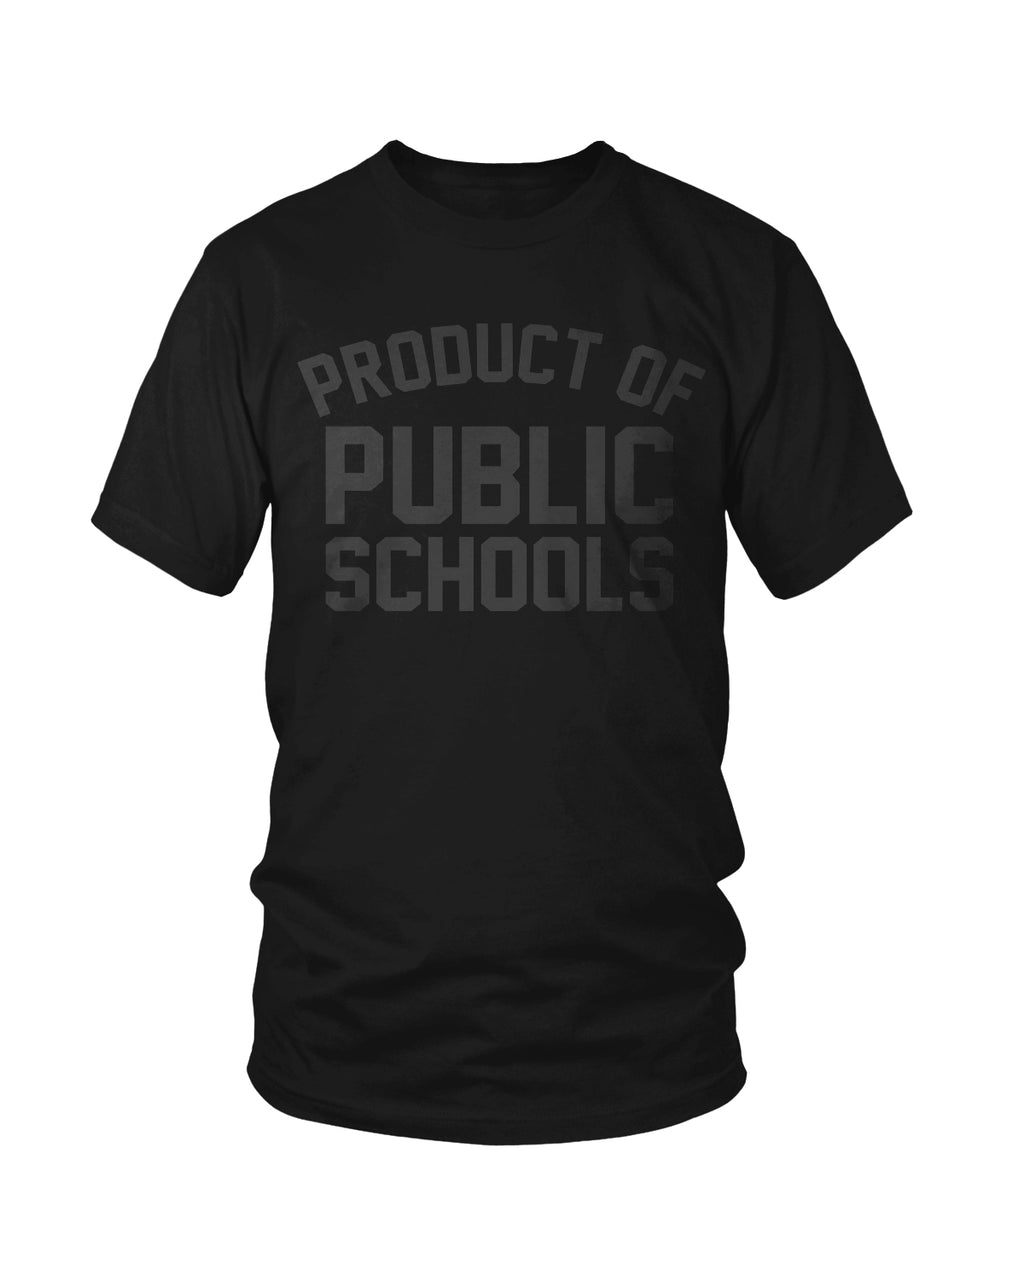 Product of Public Schools - Large Logo | Unisex | Blk/Blk - Originalitees